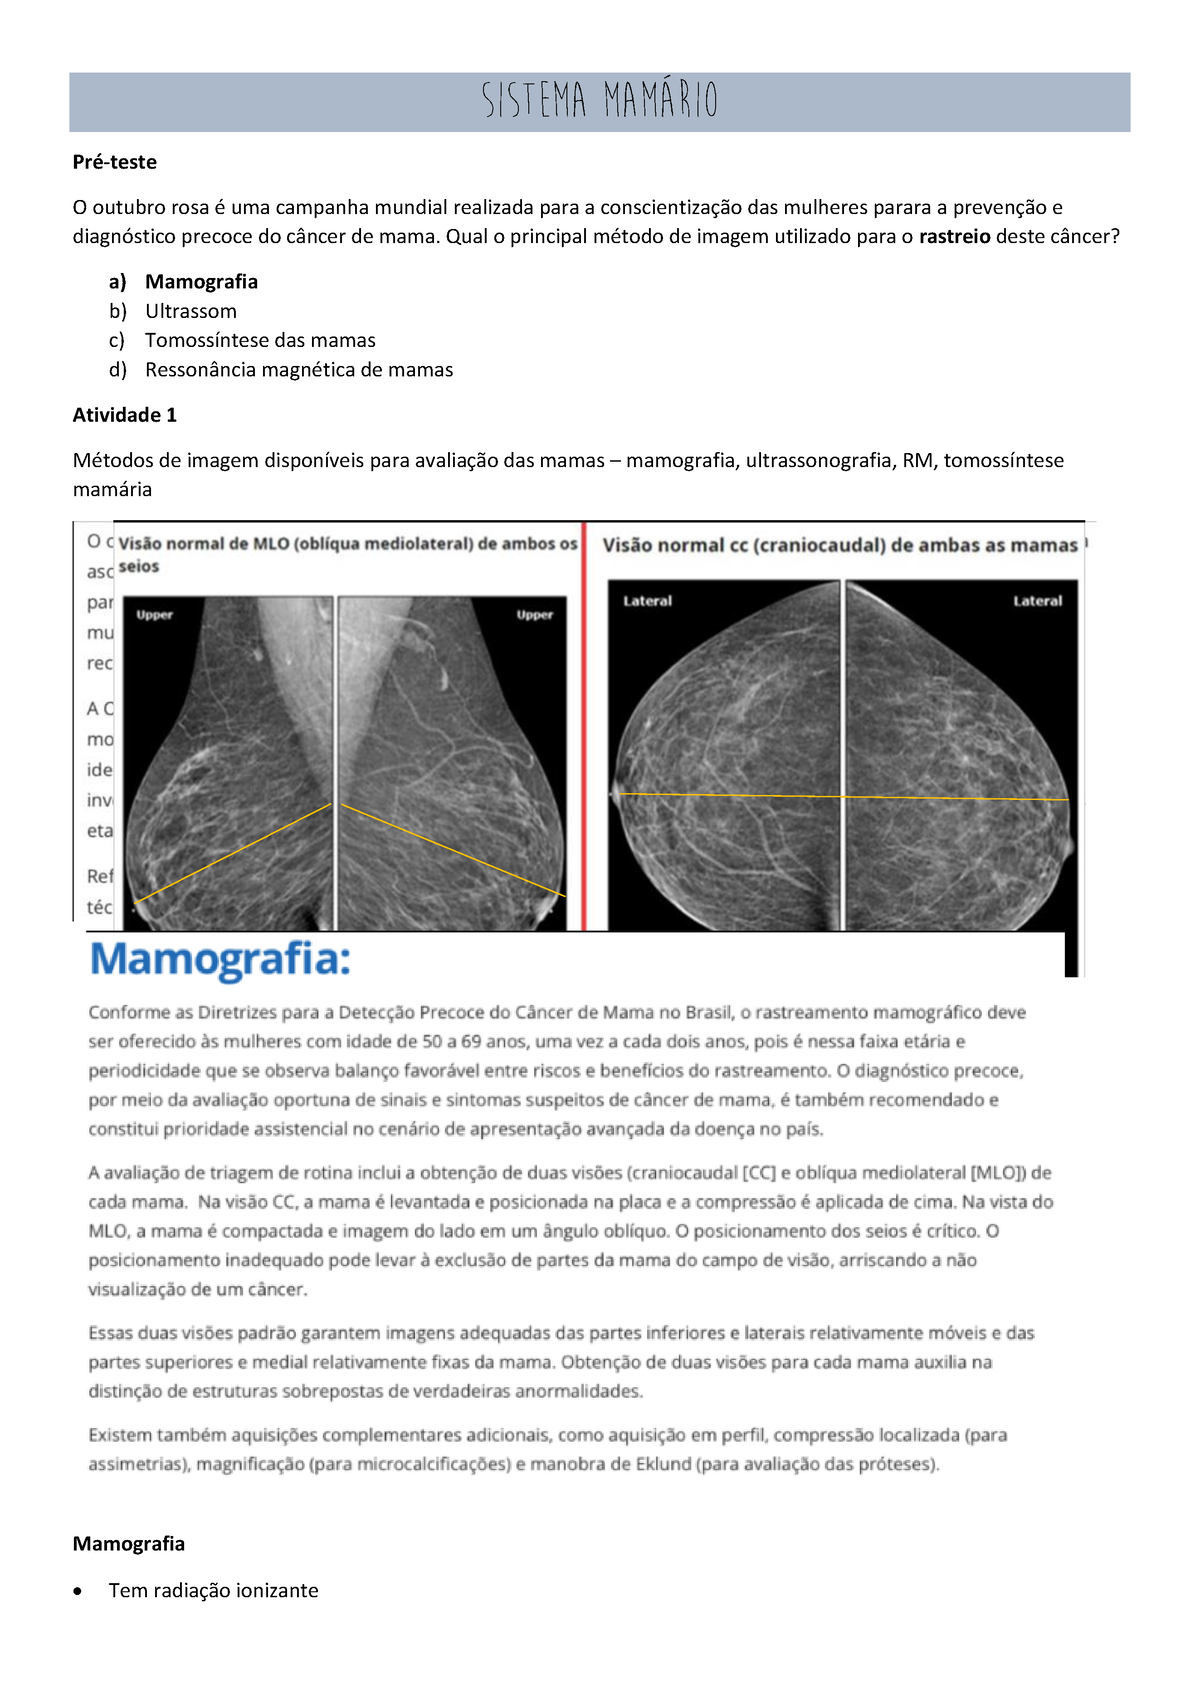 MedRadiUs - Acessar o laudo dos seus exame de Mamografia/Raio-X e  Laboratoriais é muito fácil. Acesse o nosso site com o código entregue ao  realizar o exame e retire os resultados.